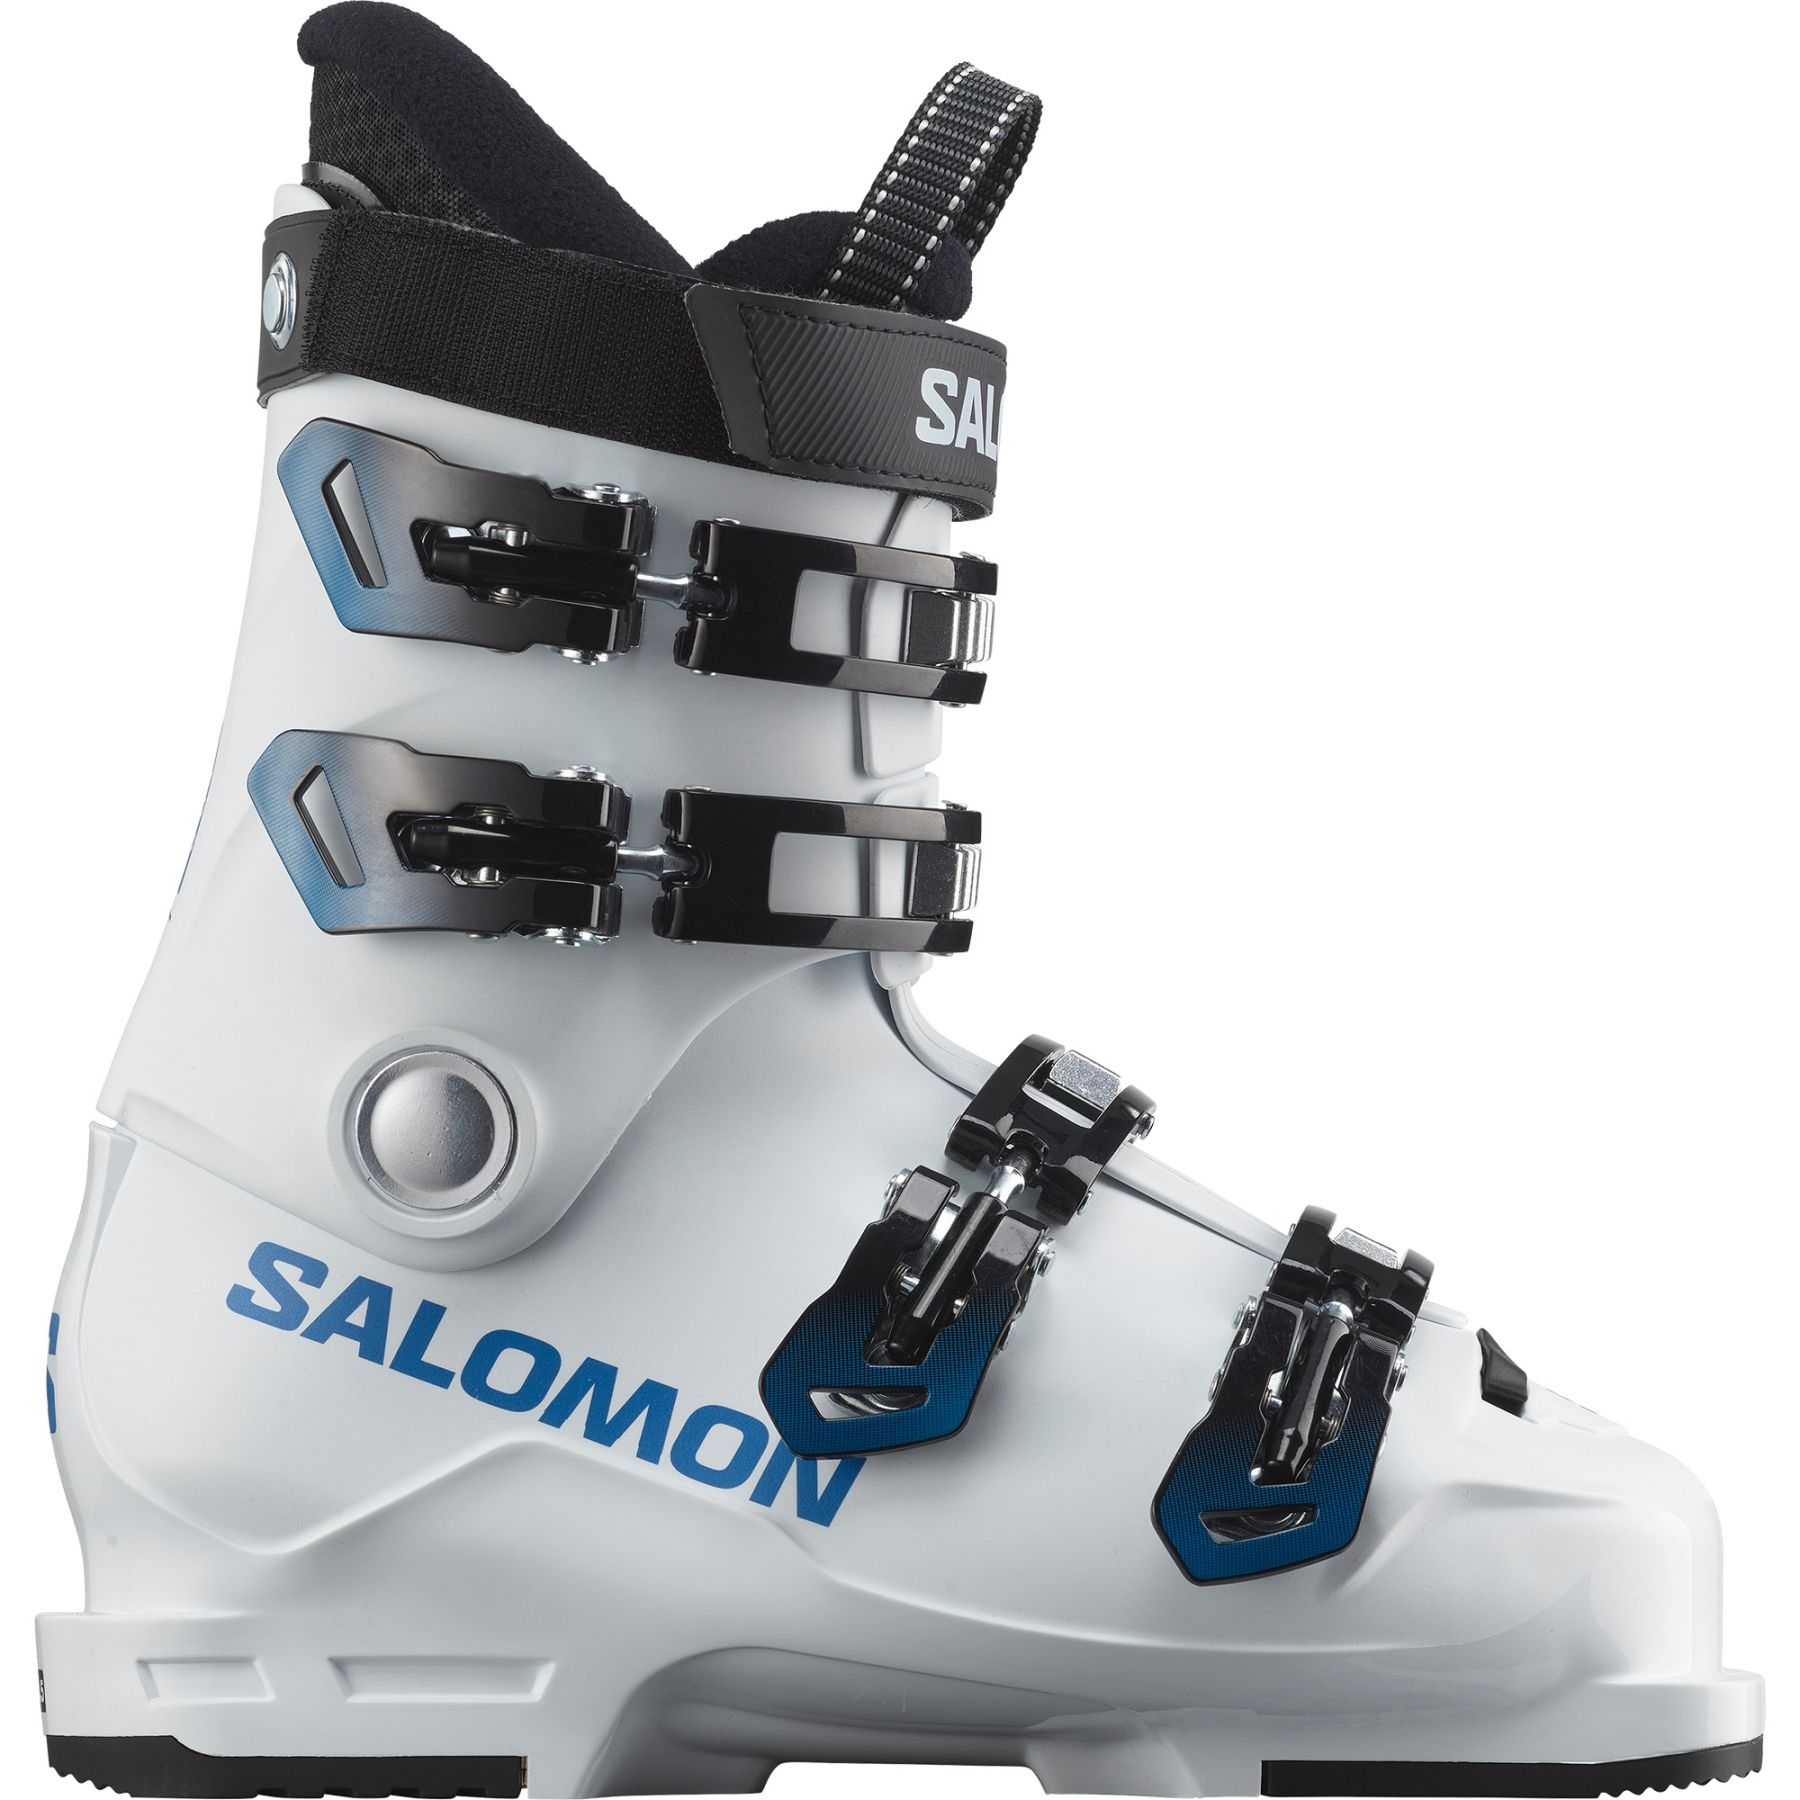 Billede af Salomon S/MAX 60T L, skistøvler, junior, hvid/blå